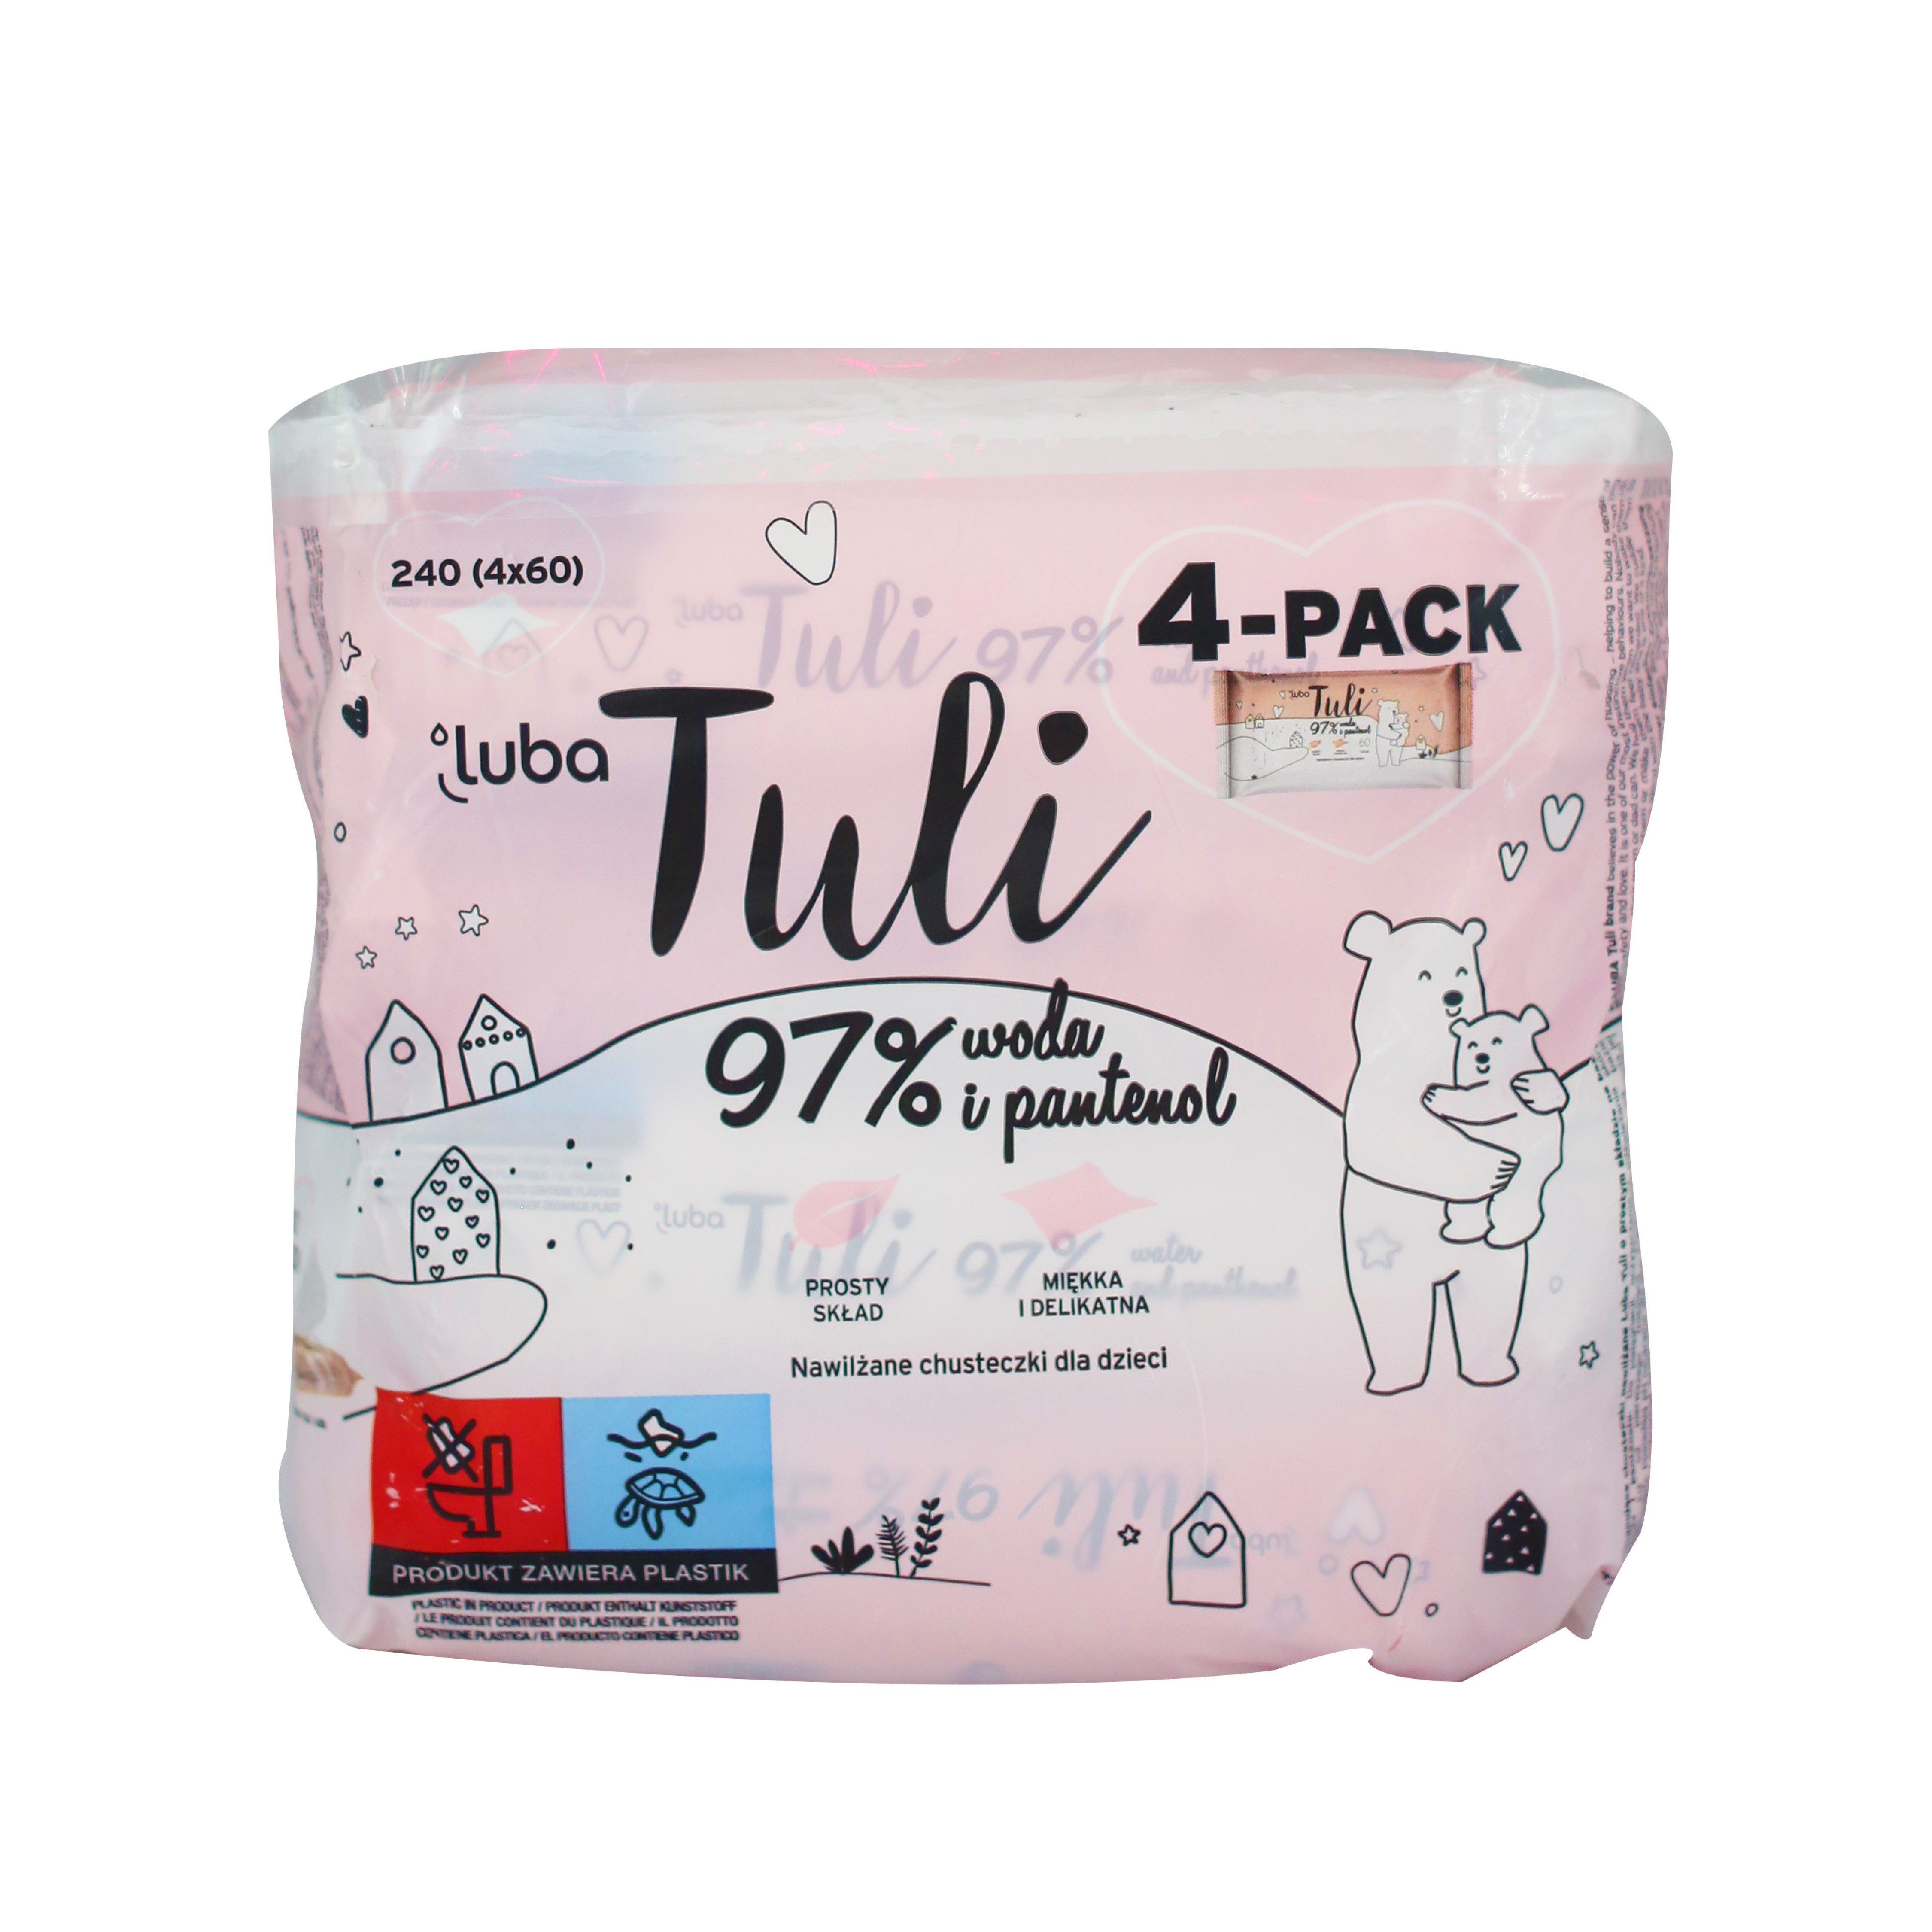 Детские влажные салфетки Luba Tuli, 97% воды и пантенол, 240 шт. (4 упаковки по 60 шт.) - фото 1